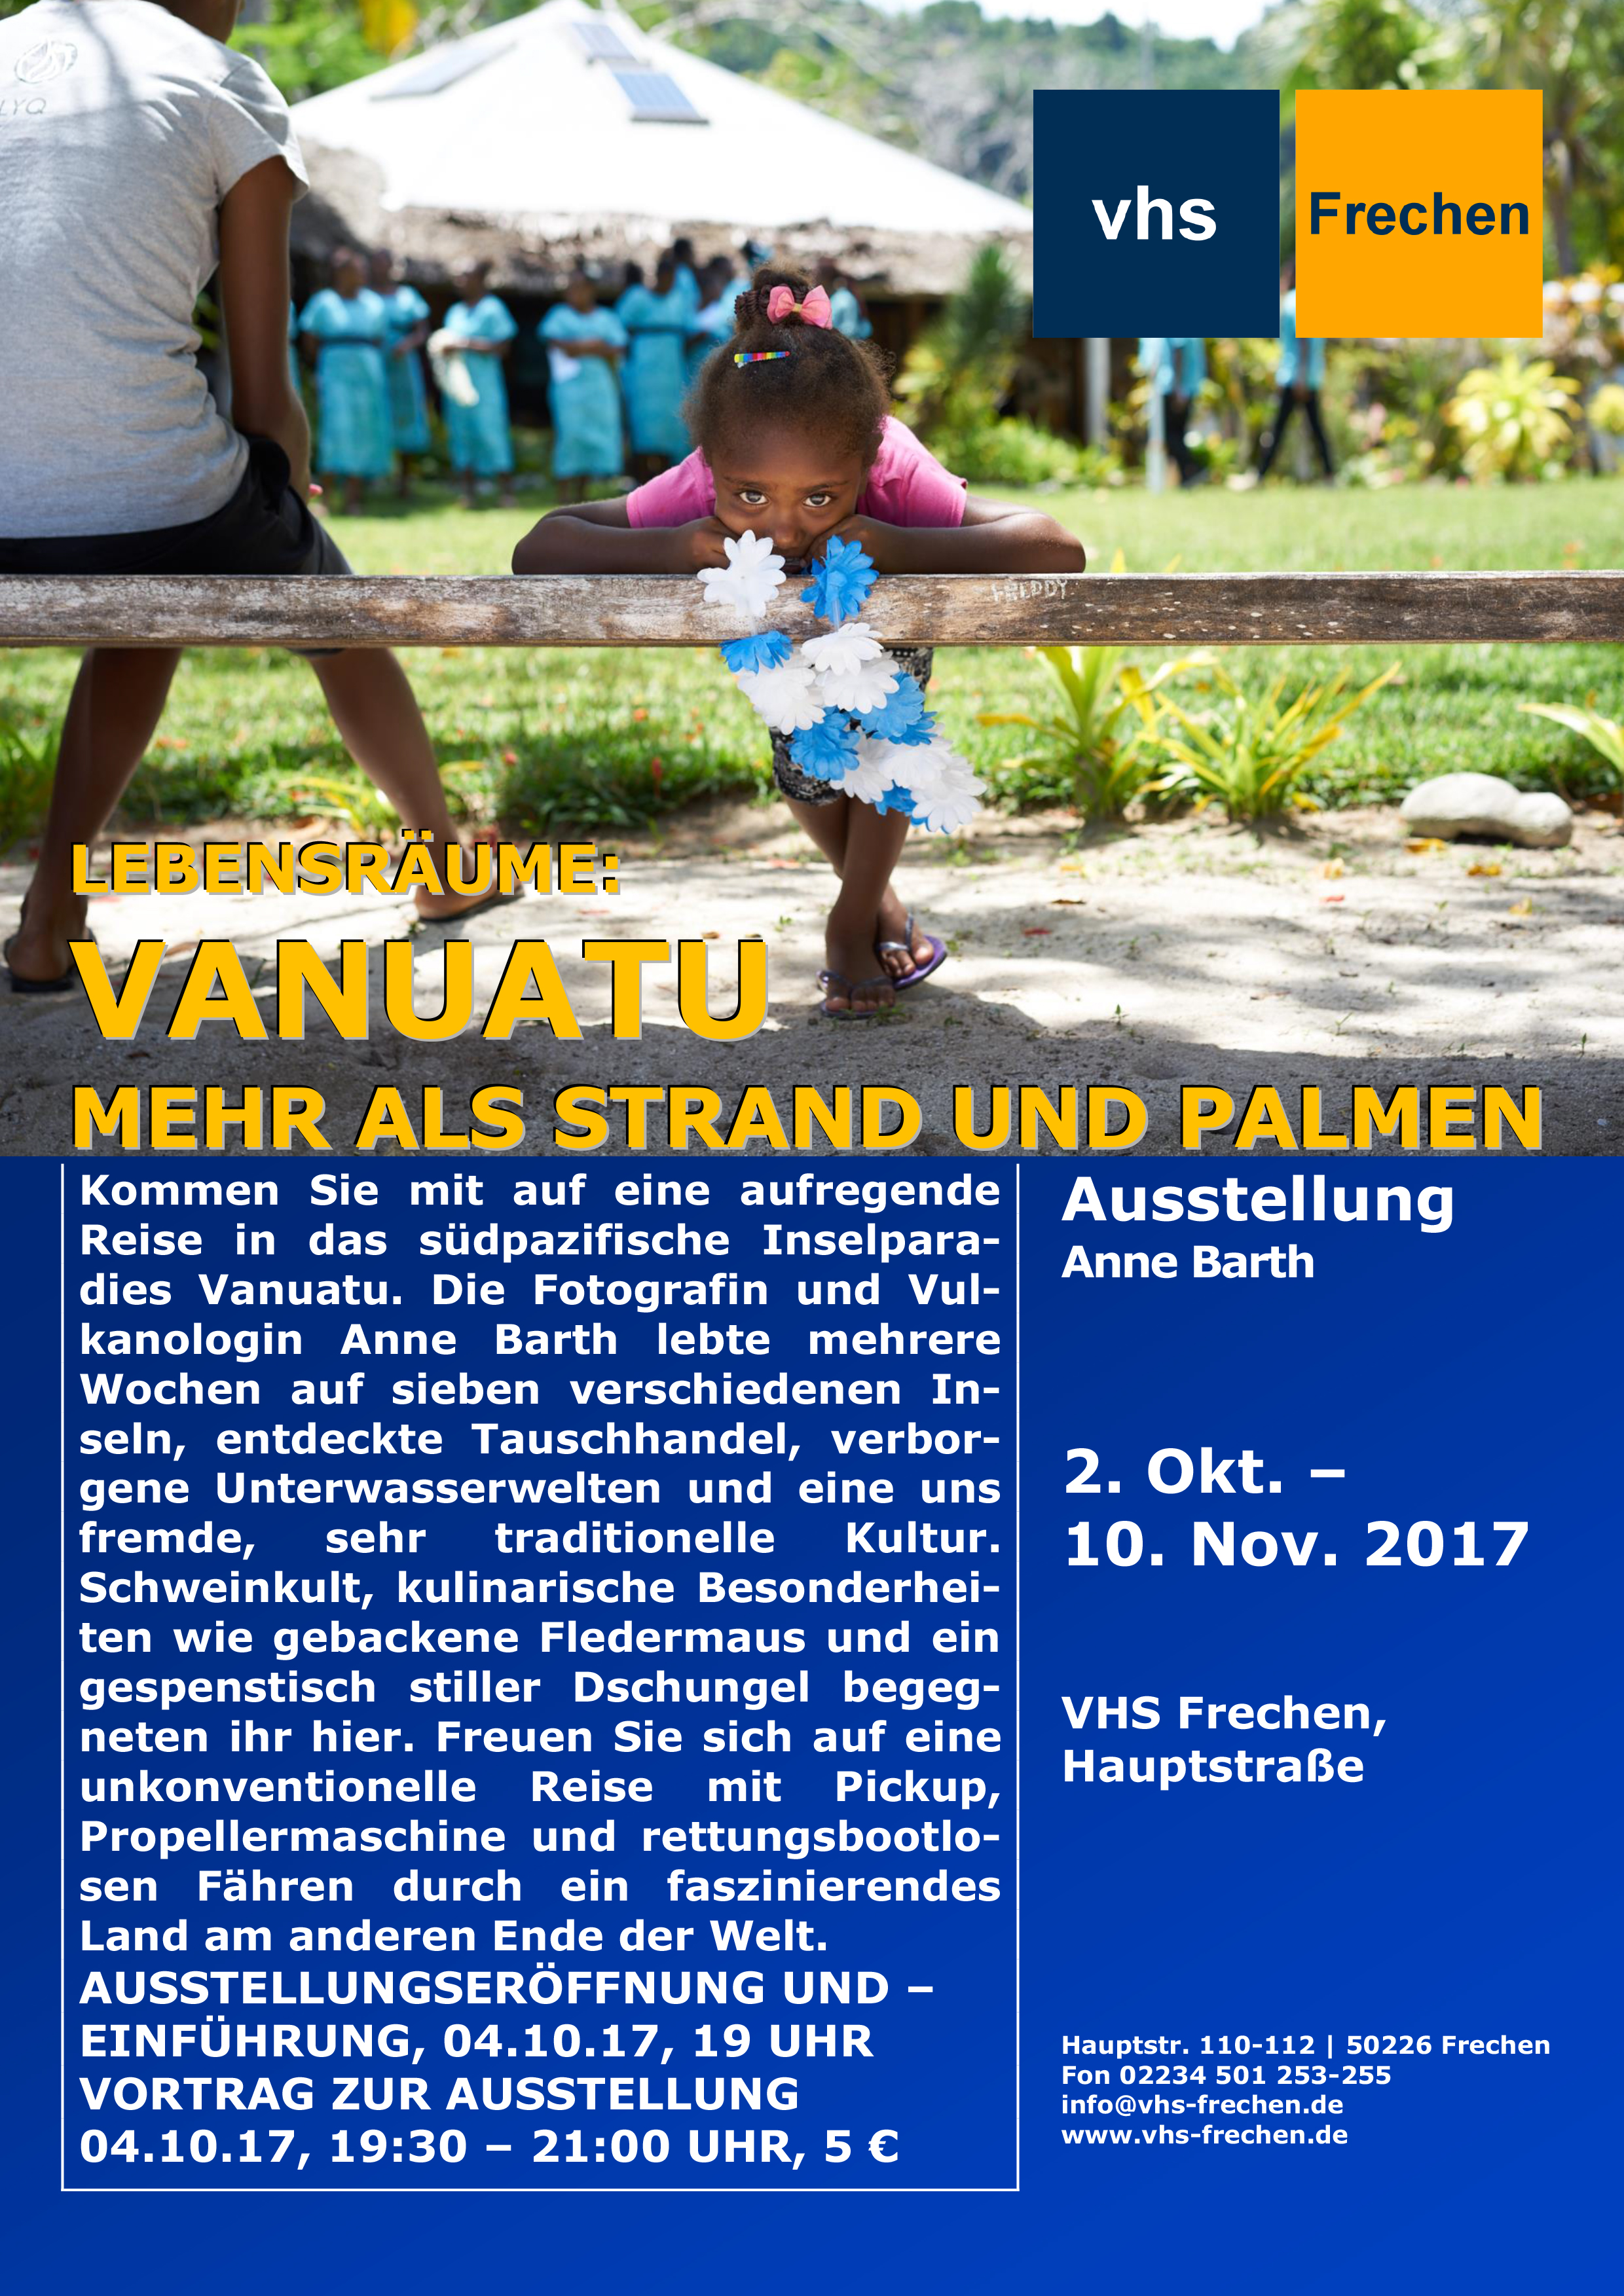 Vanuatu – Ausstellung und Vortrag